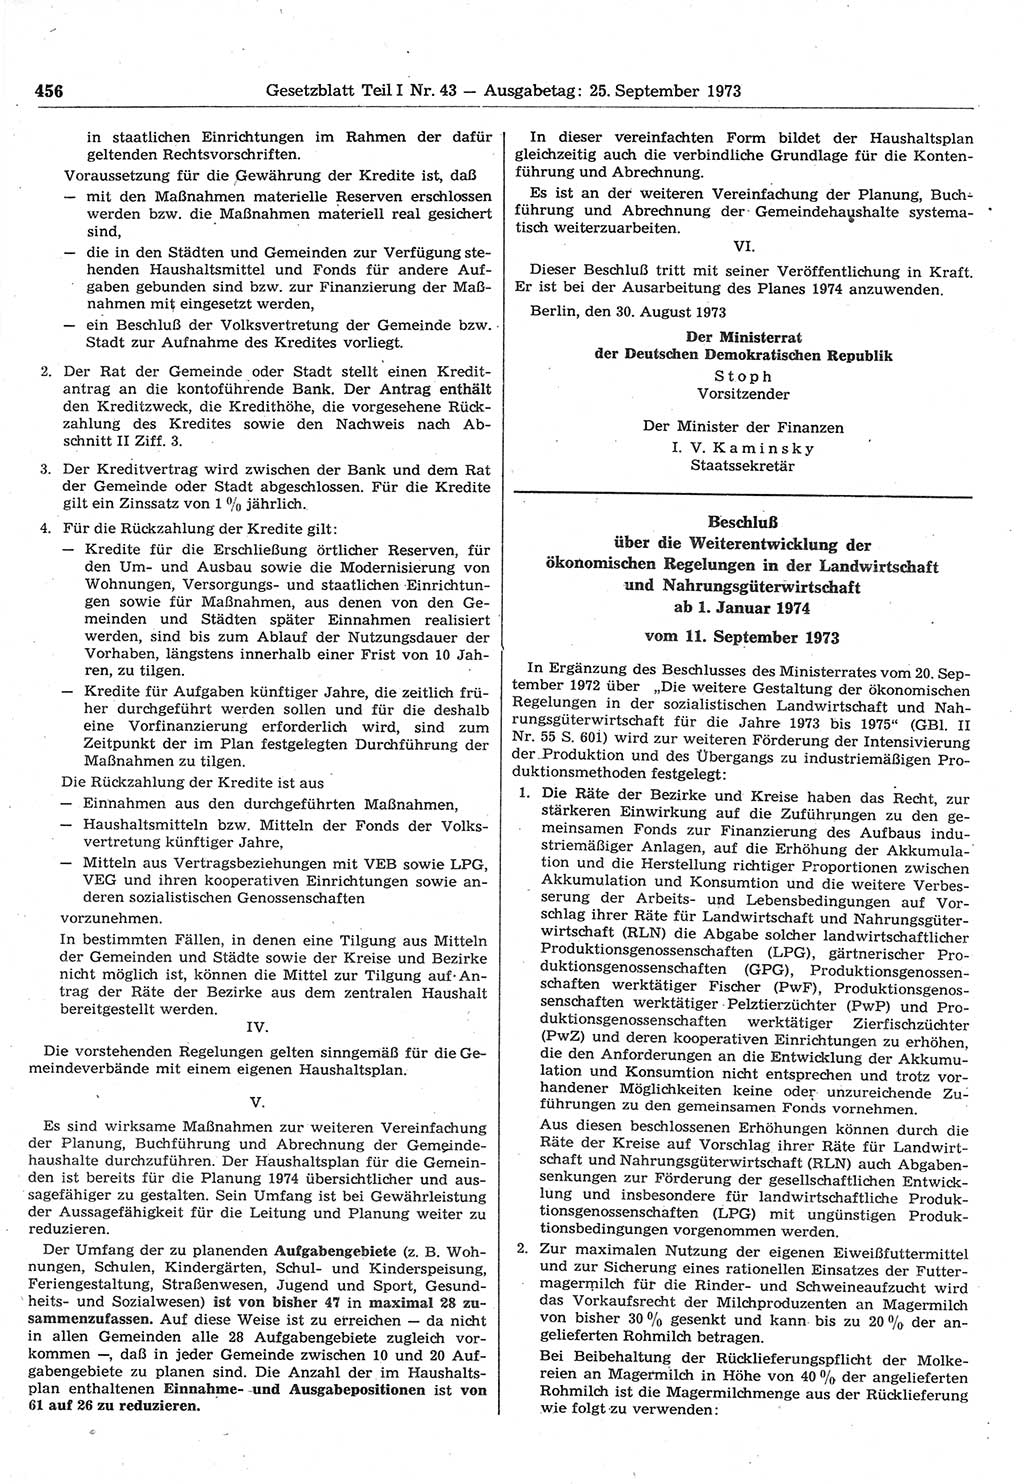 Gesetzblatt (GBl.) der Deutschen Demokratischen Republik (DDR) Teil Ⅰ 1973, Seite 456 (GBl. DDR Ⅰ 1973, S. 456)